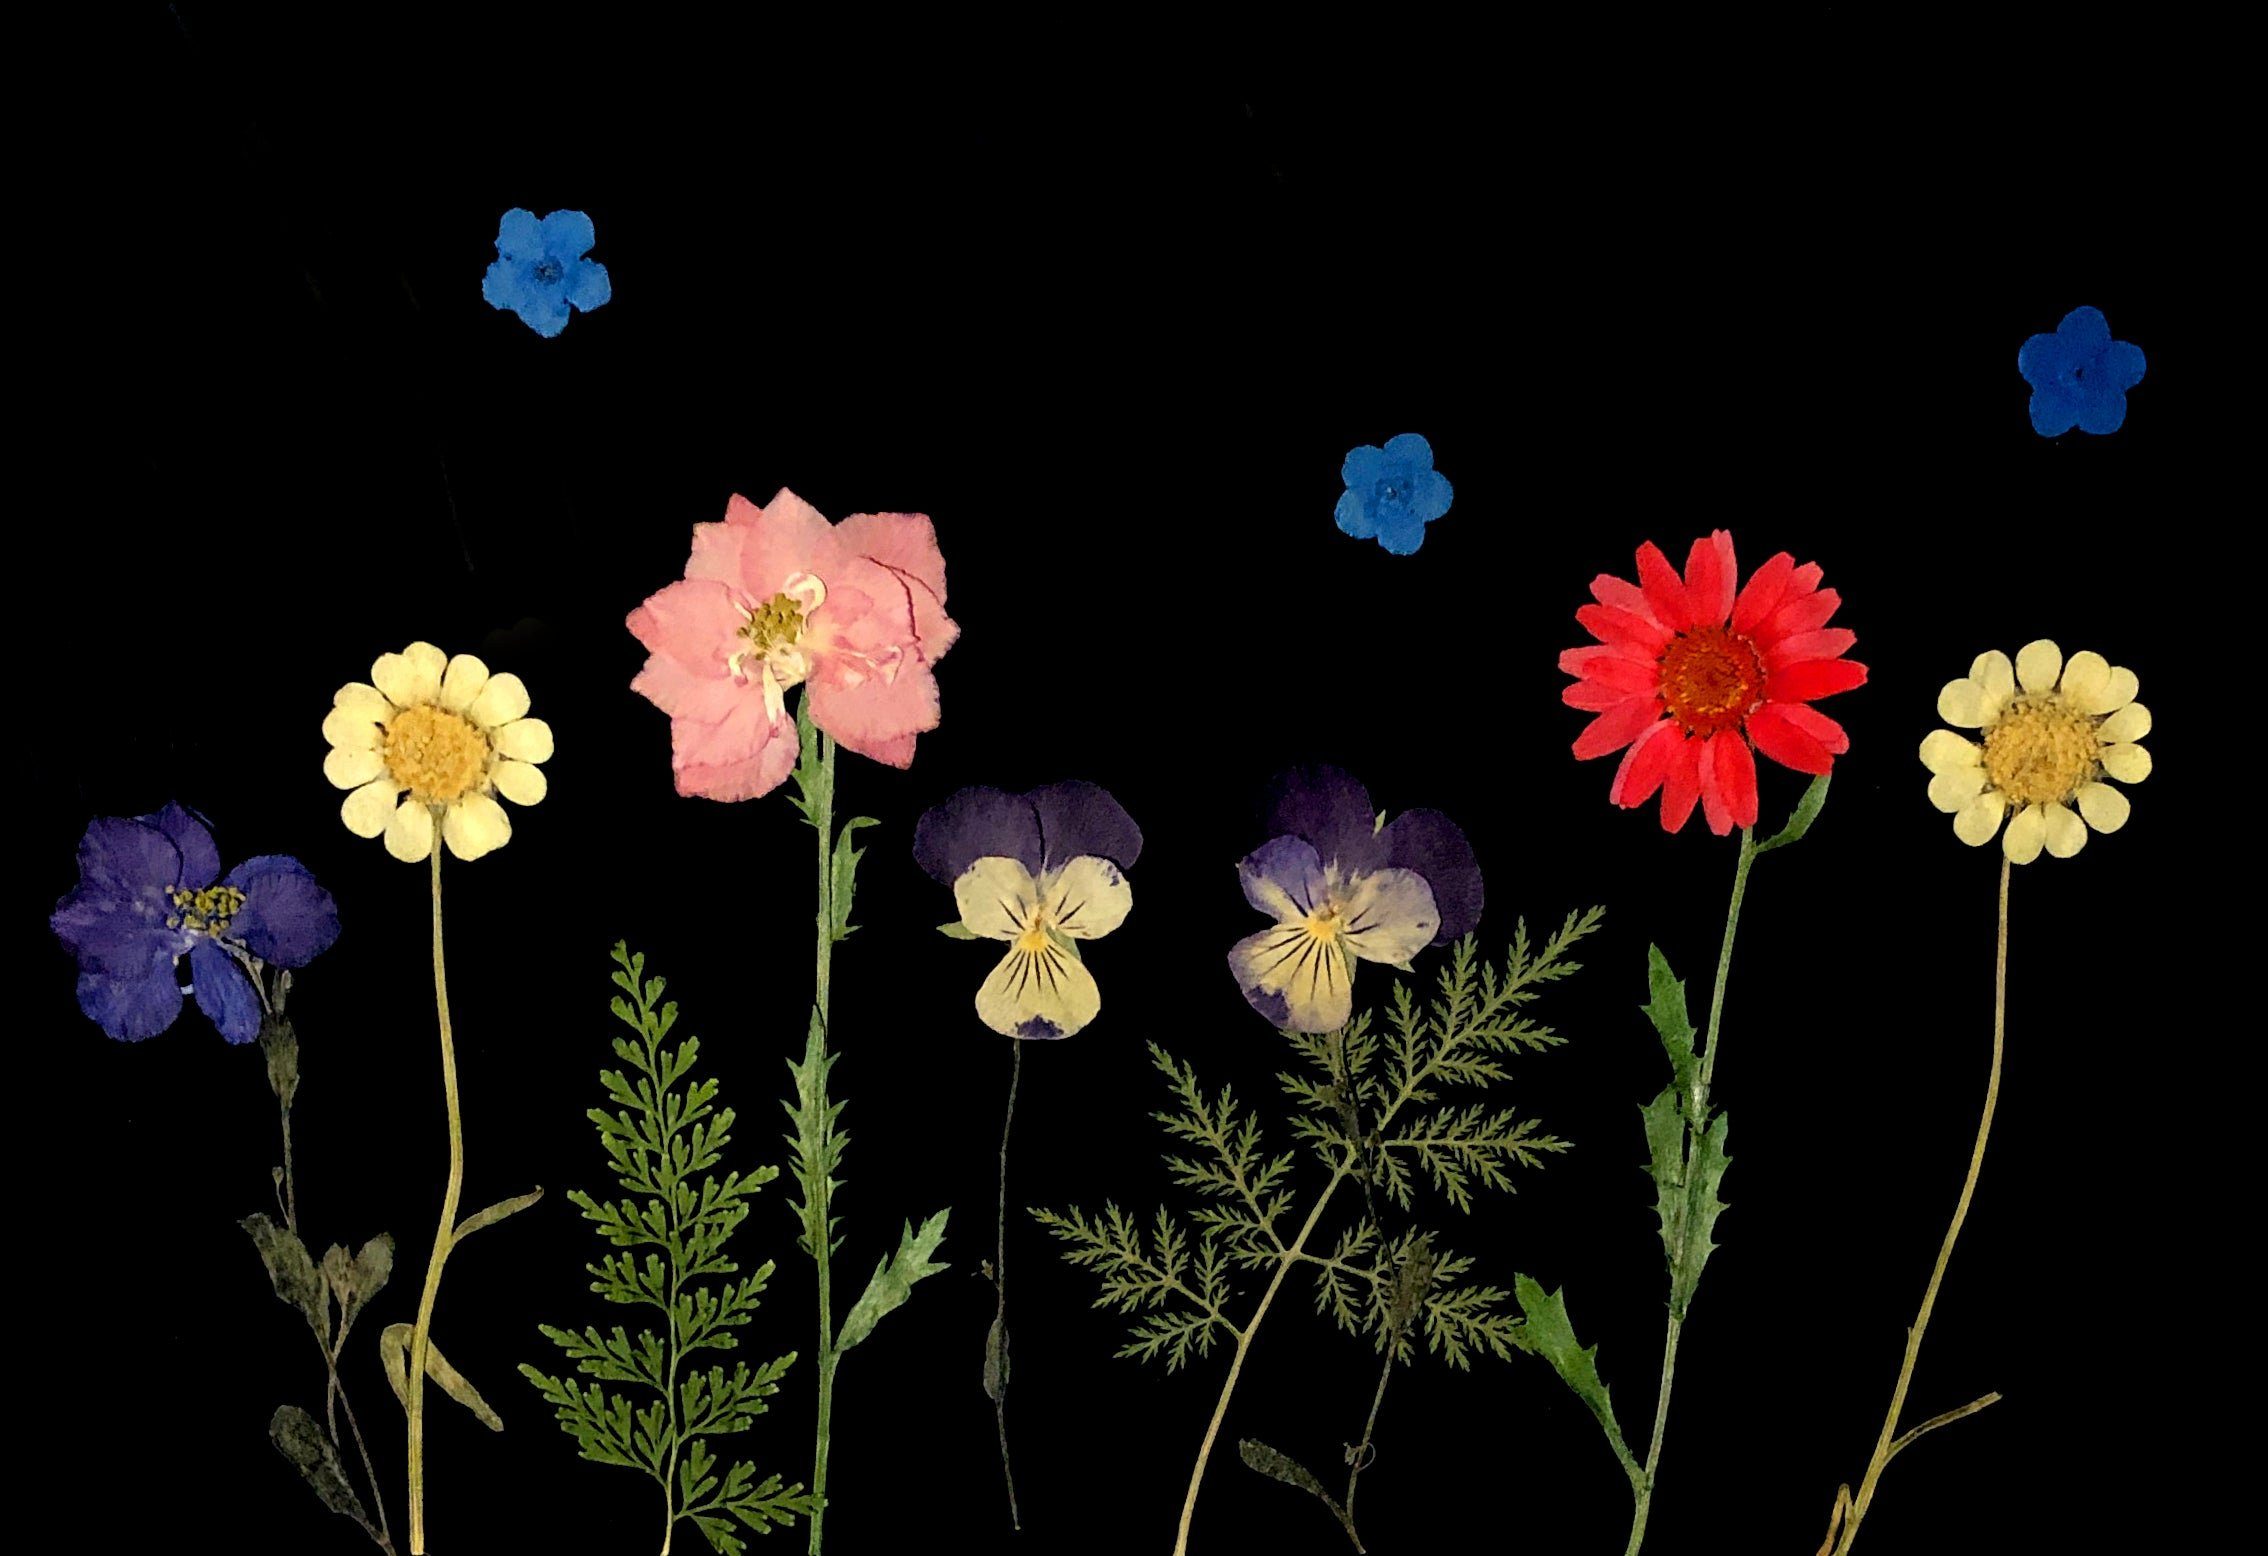 Gepresste - Blüten Blumen und Lila, Farben in Kunstharz.Art Trockenblume vielen